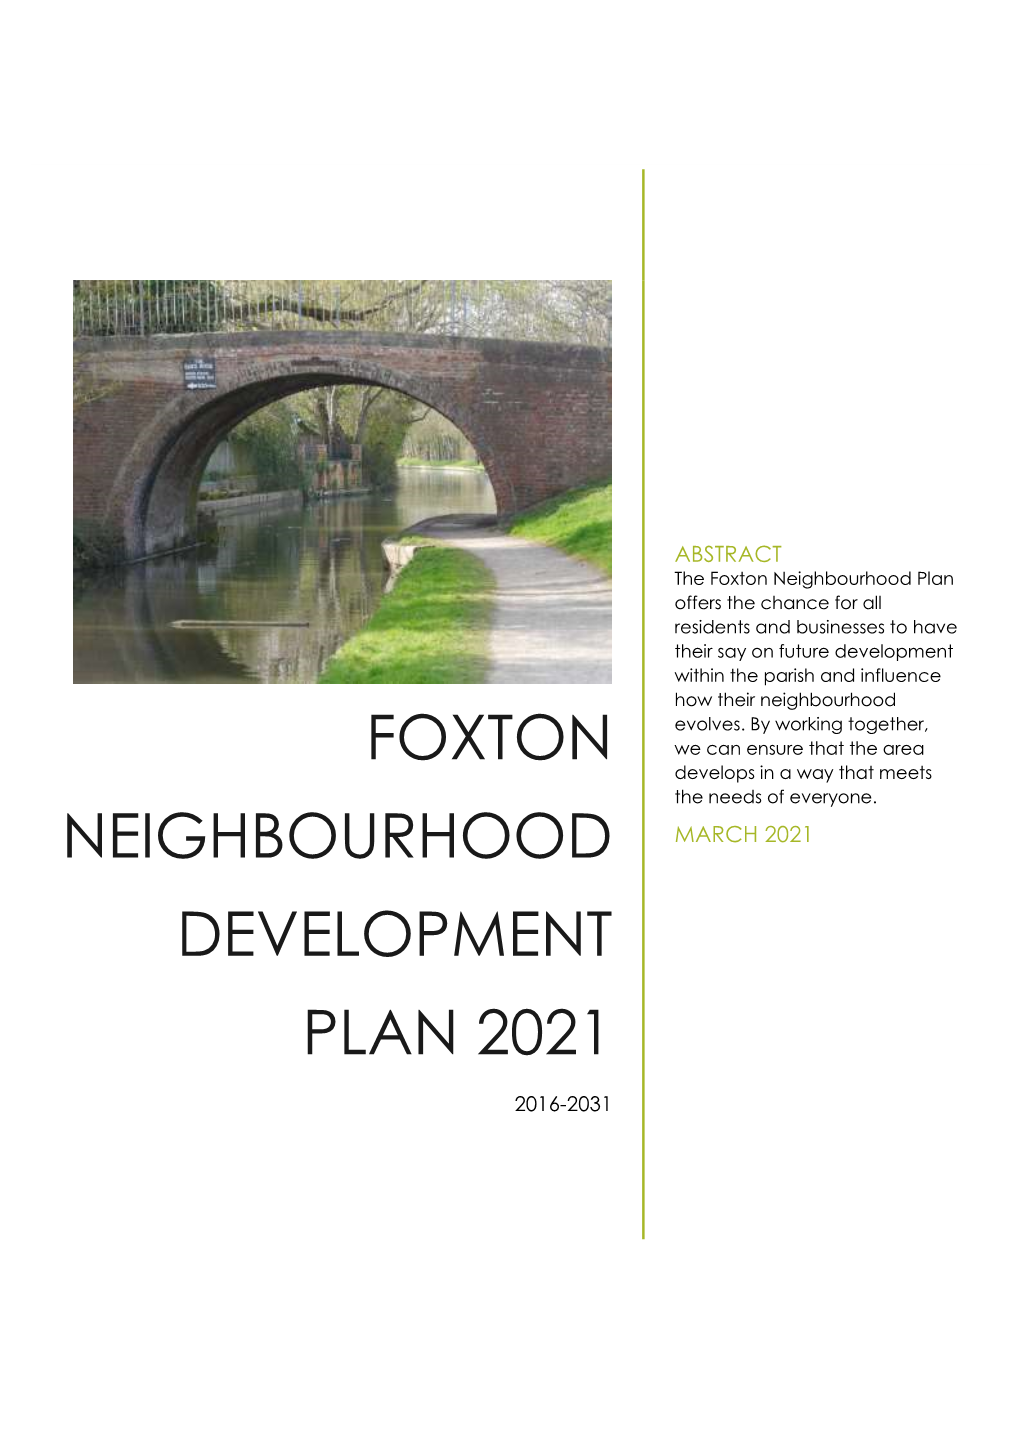 Foxton Neighbourhood Development Plan 2021